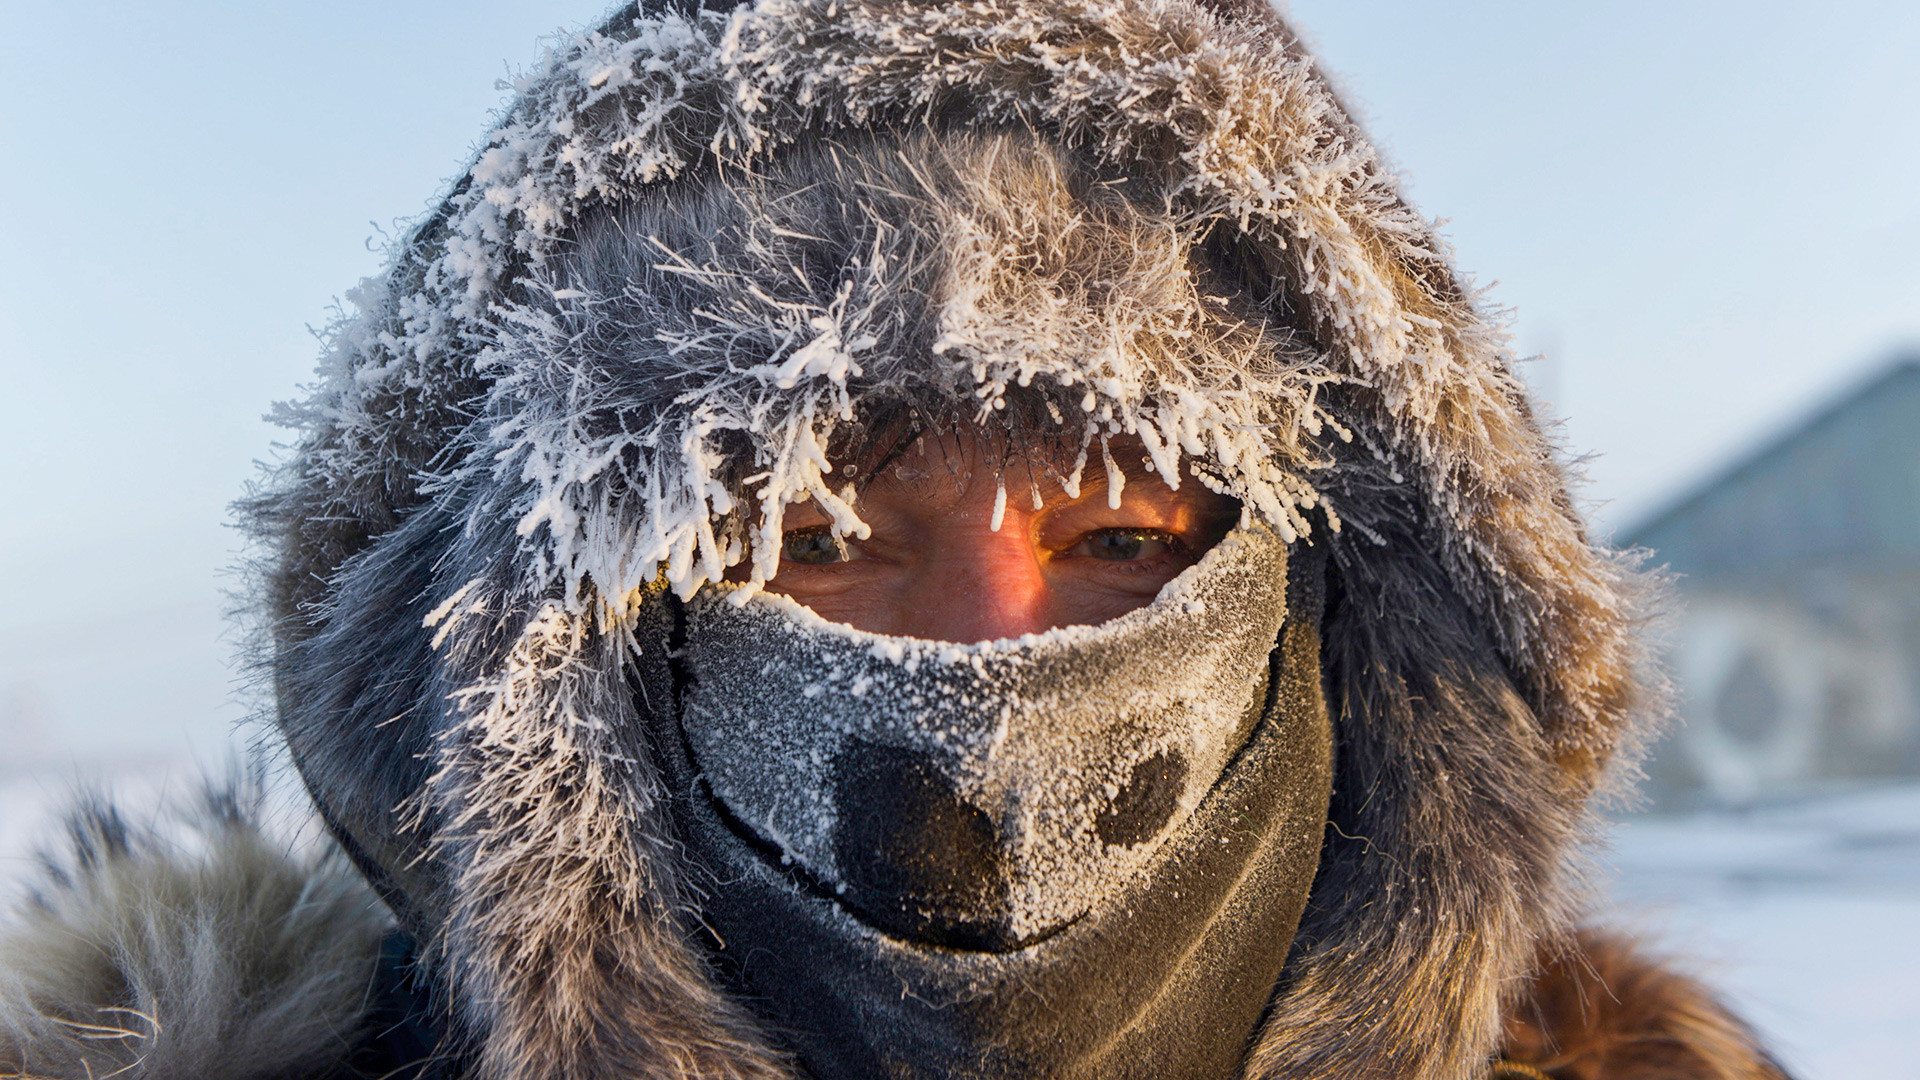 Turist iz Norveške u Jakutiji. Temperatura se spustila na -47 stupnjeva Celzija.

